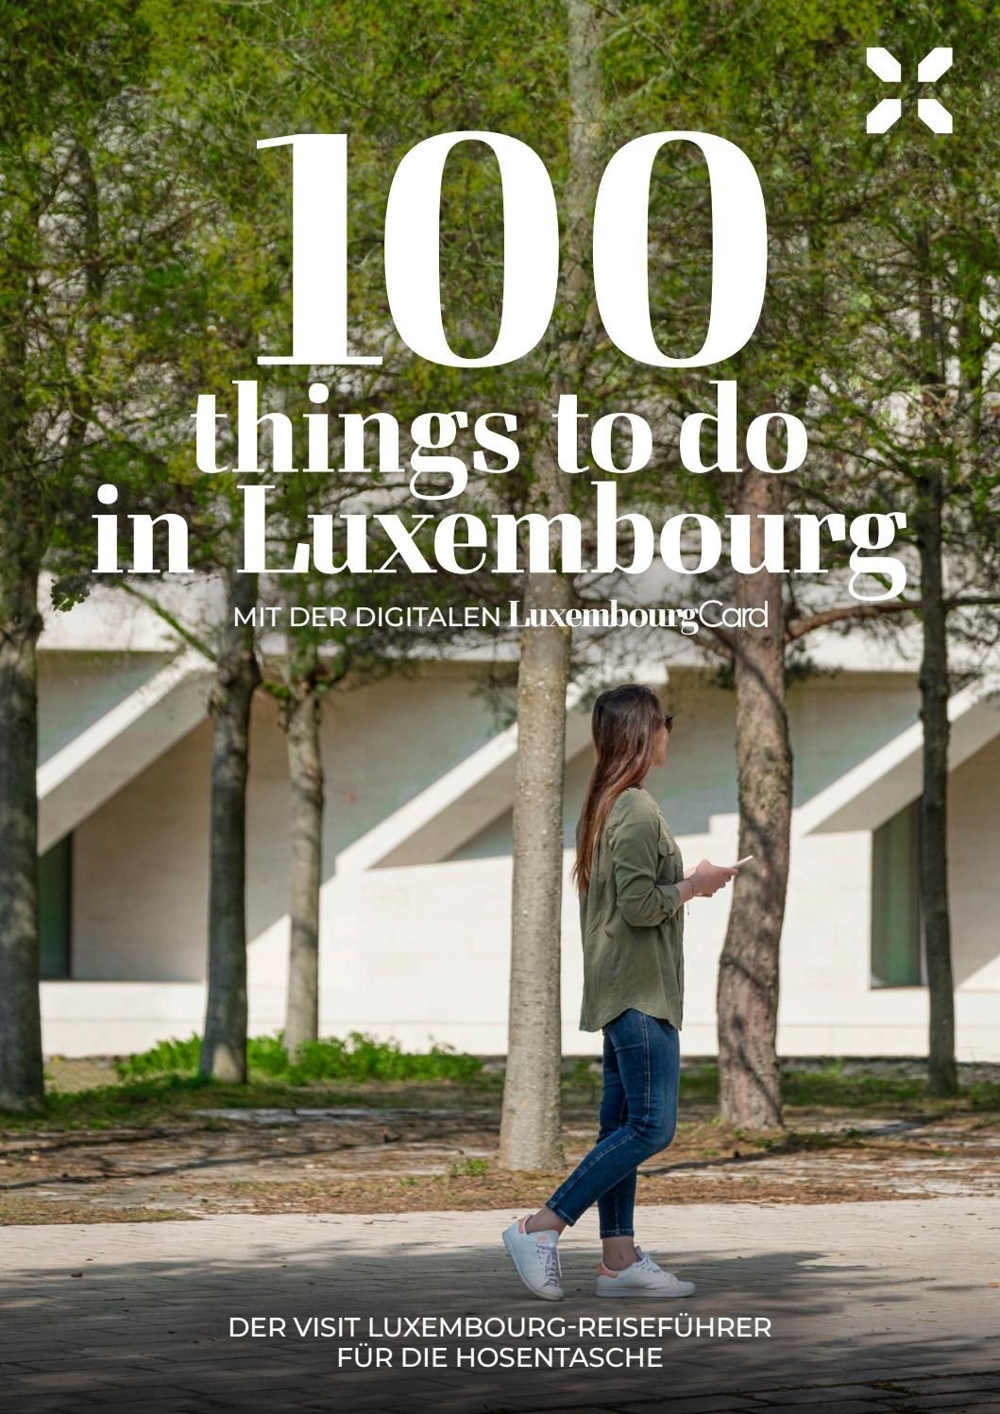 Luxemburg Reiseführer zu verschenken